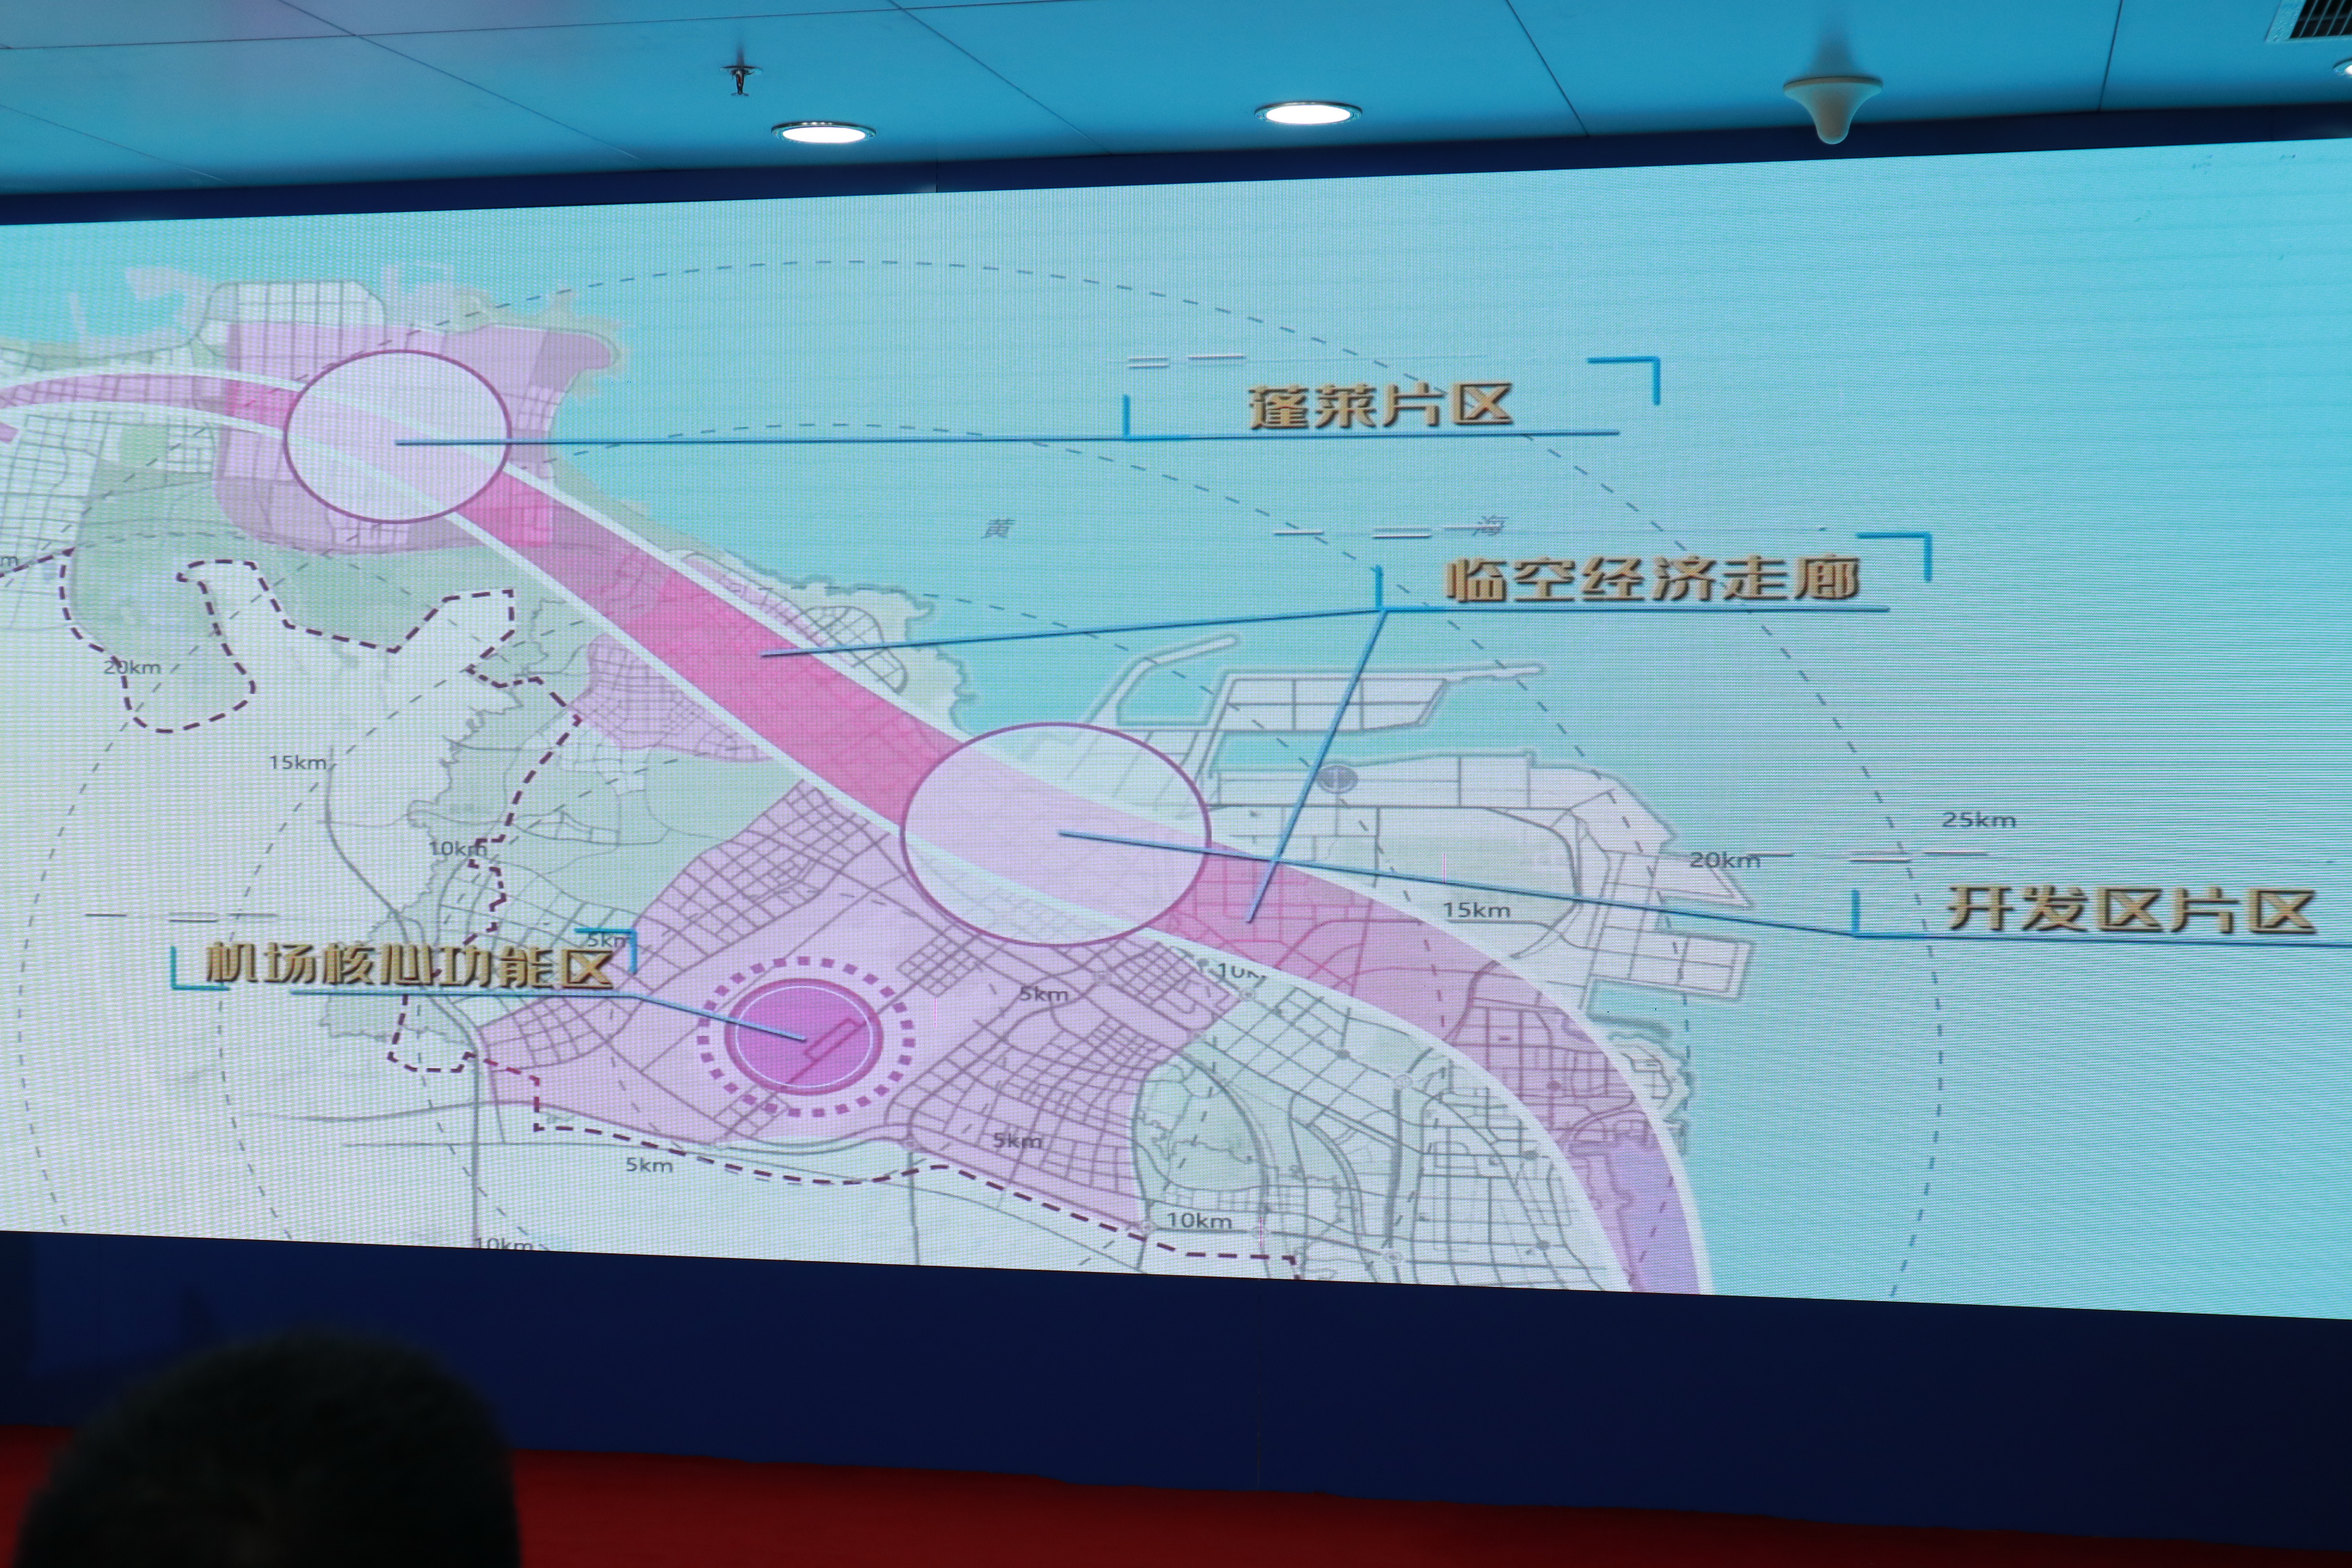 聚焦烟台"重点片区"|空港新区在建筹建项目11个,蓬莱机场二期计划2022